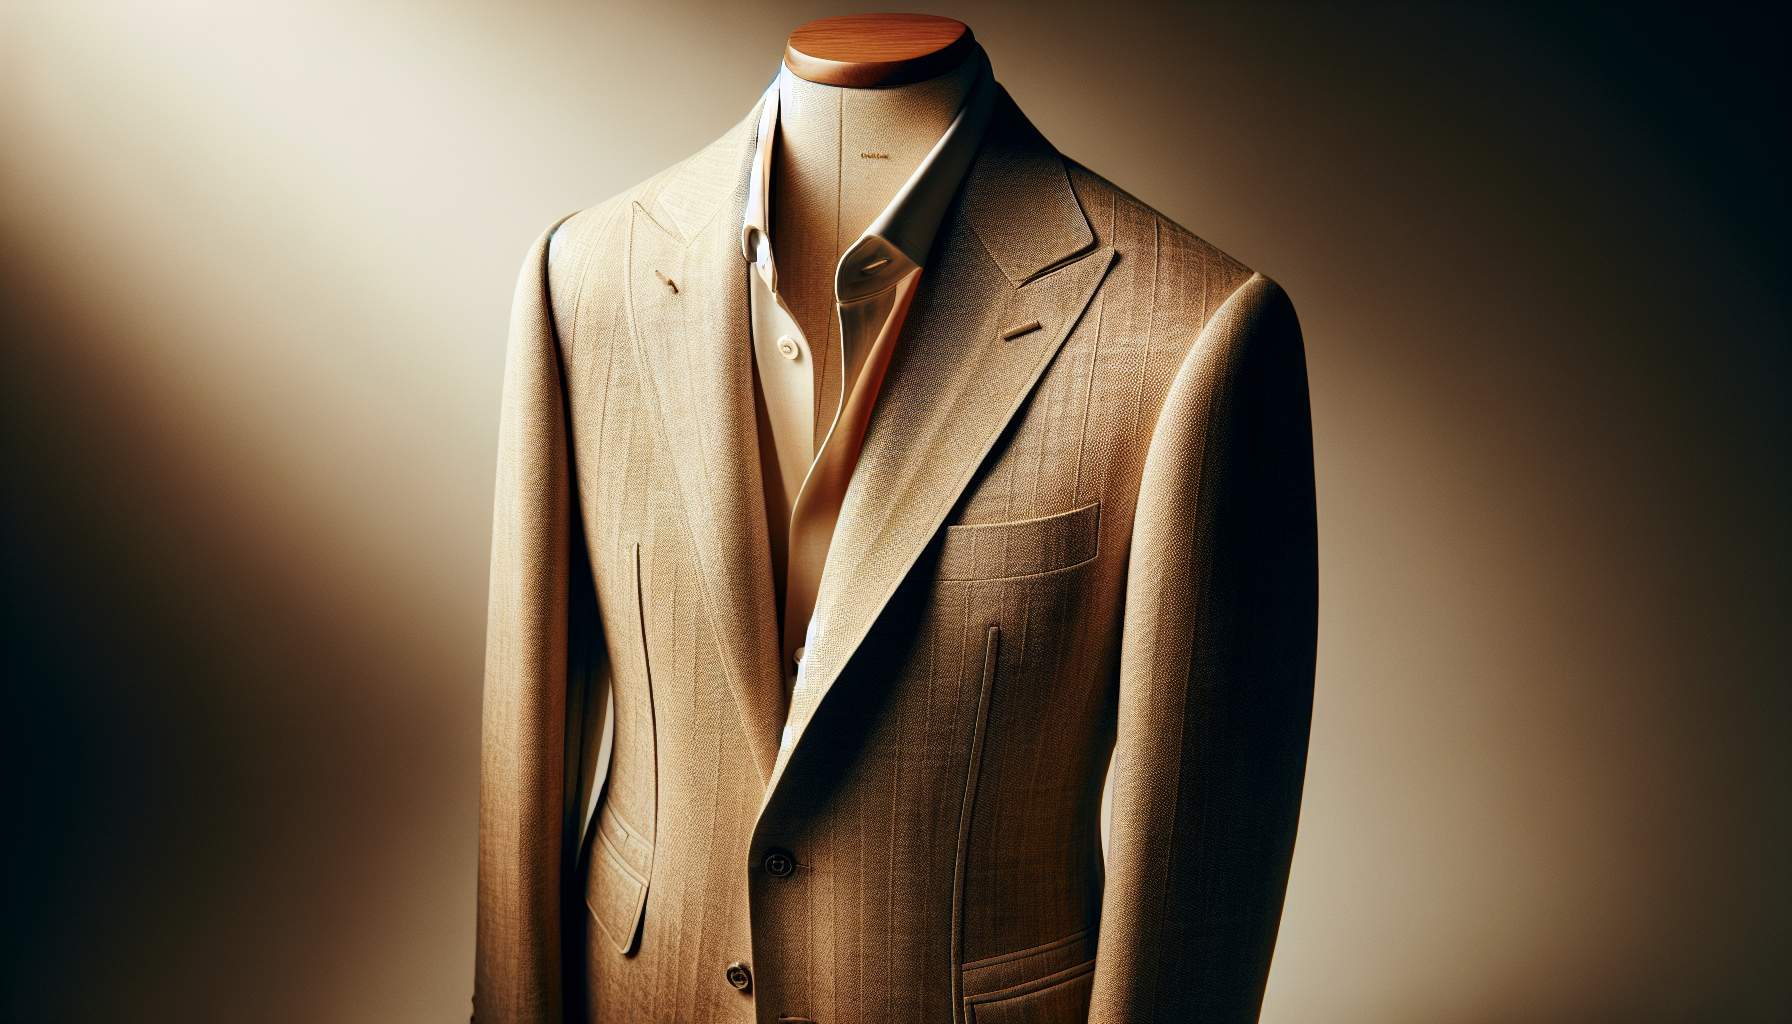 Veste costume beige homme : le guide ultime pour un style classique et intemporel